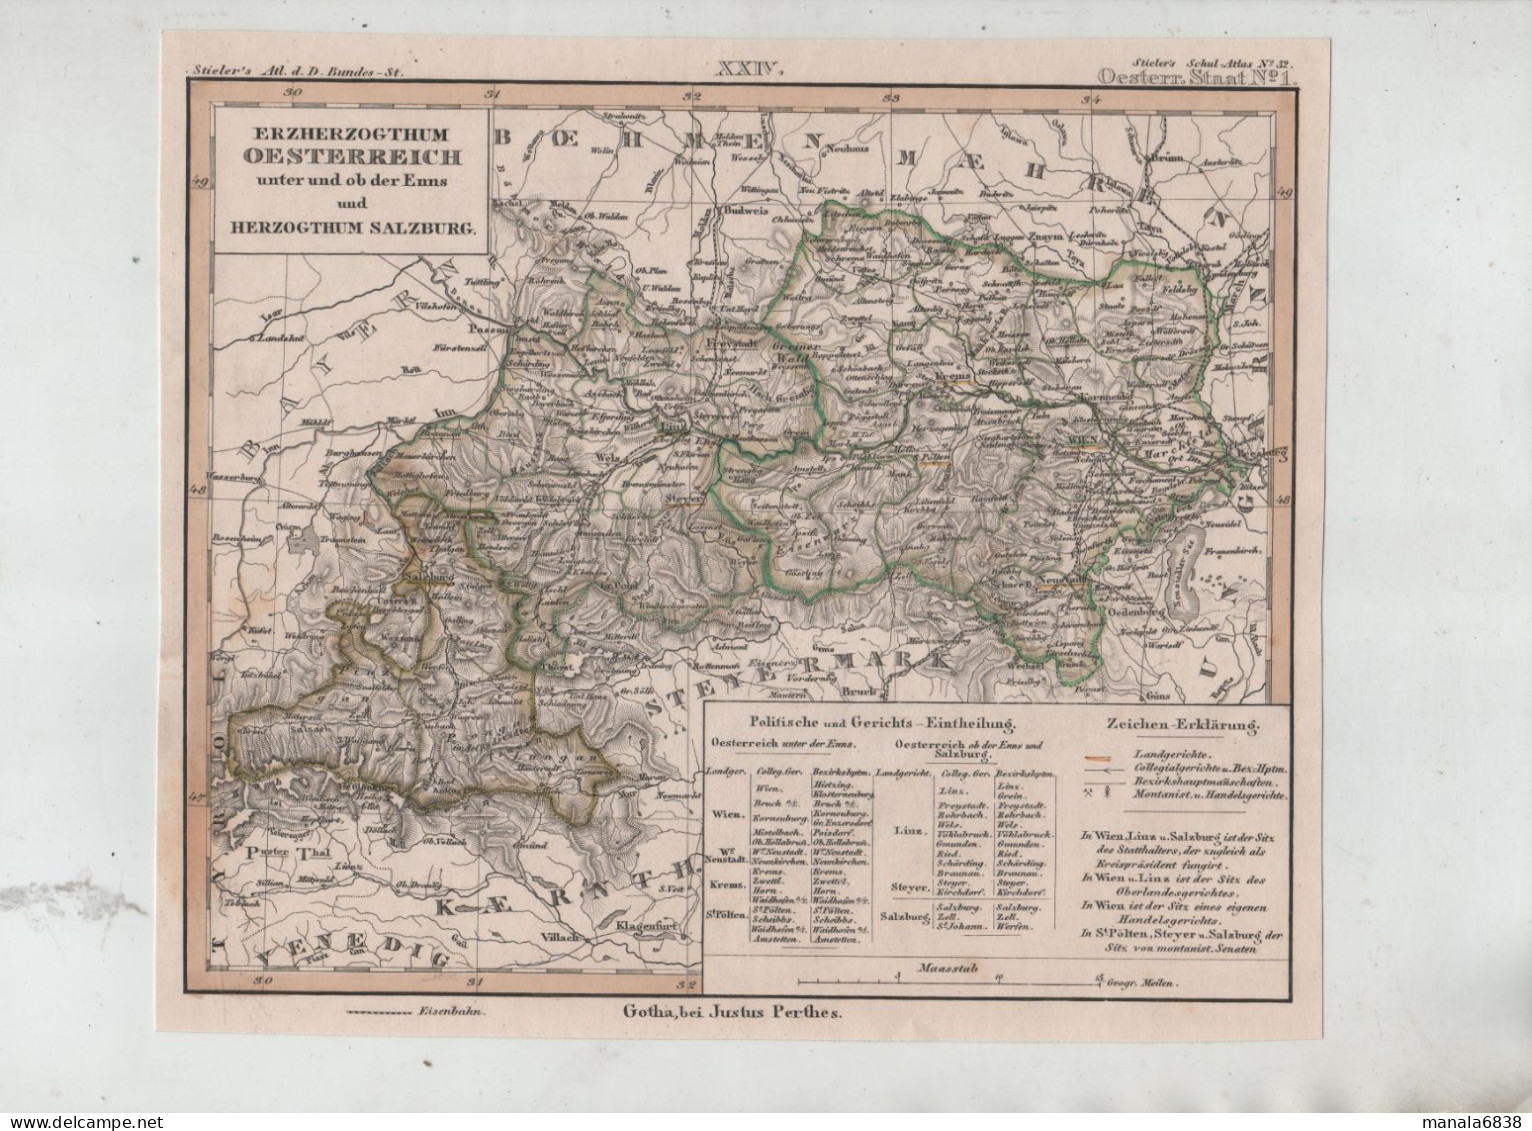 Erzherzogthum Oesterreich Unter Und Ob Der Enns Und Herzogthum Salzburg Gotha Bei Justus Perthes - Geographische Kaarten